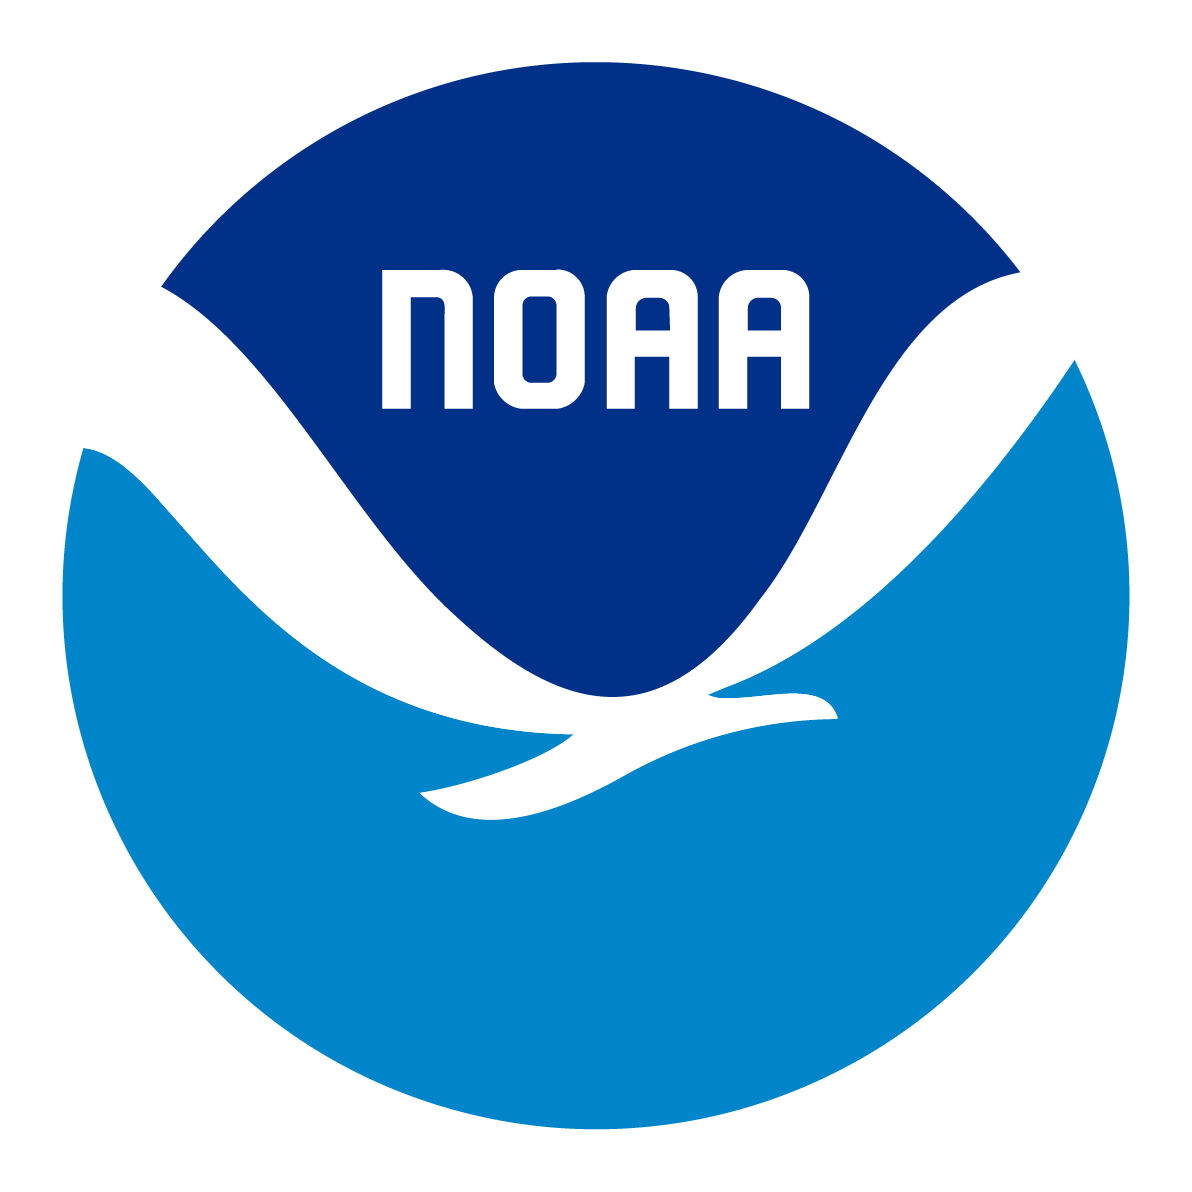 NASA-Goddard Space Logo